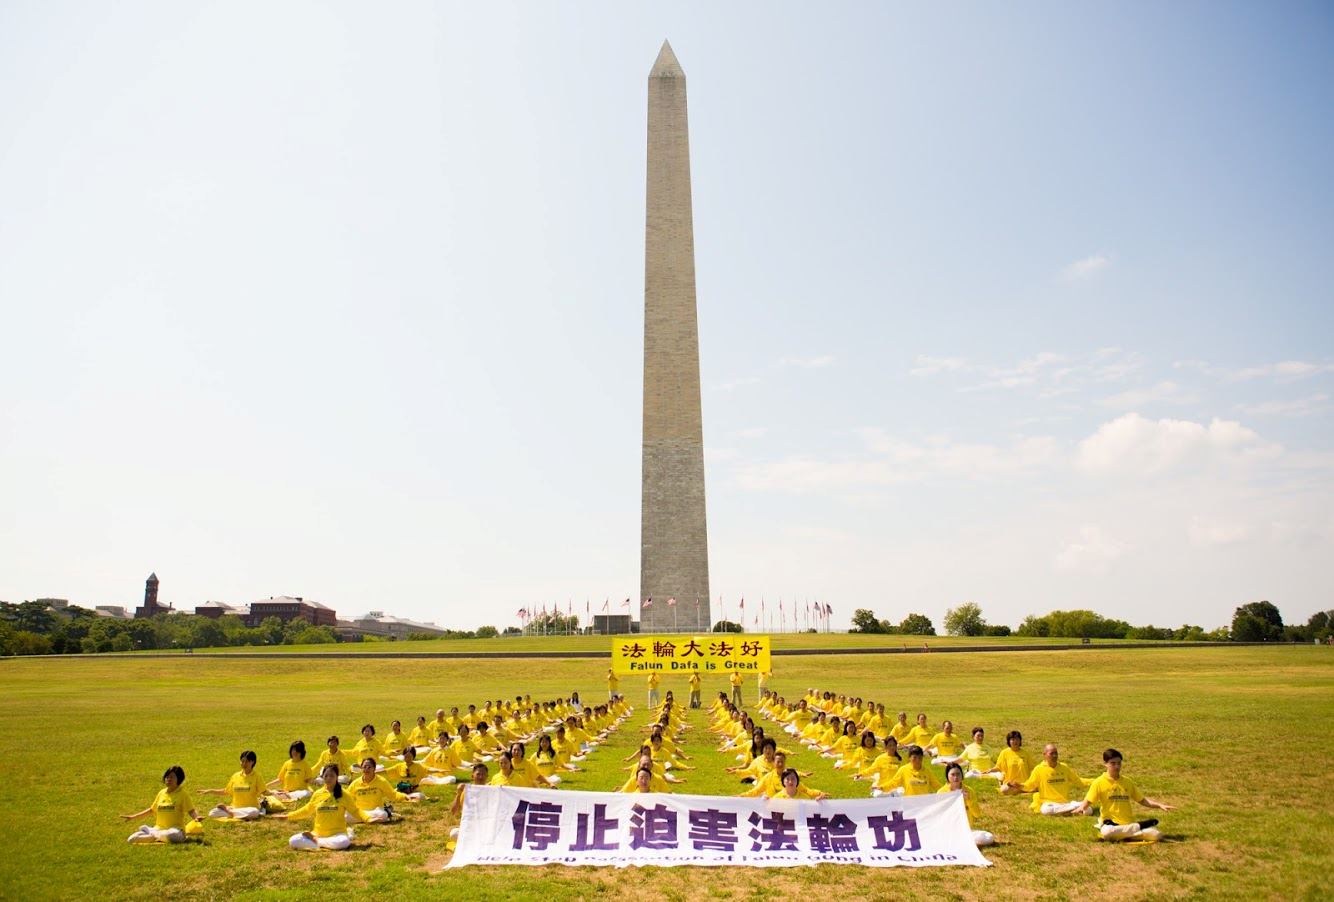 Image for article Washington, D.C. : Les pratiquants de Falun Gong célèbrent 21 ans de résistance pacifique à la persécution en Chine